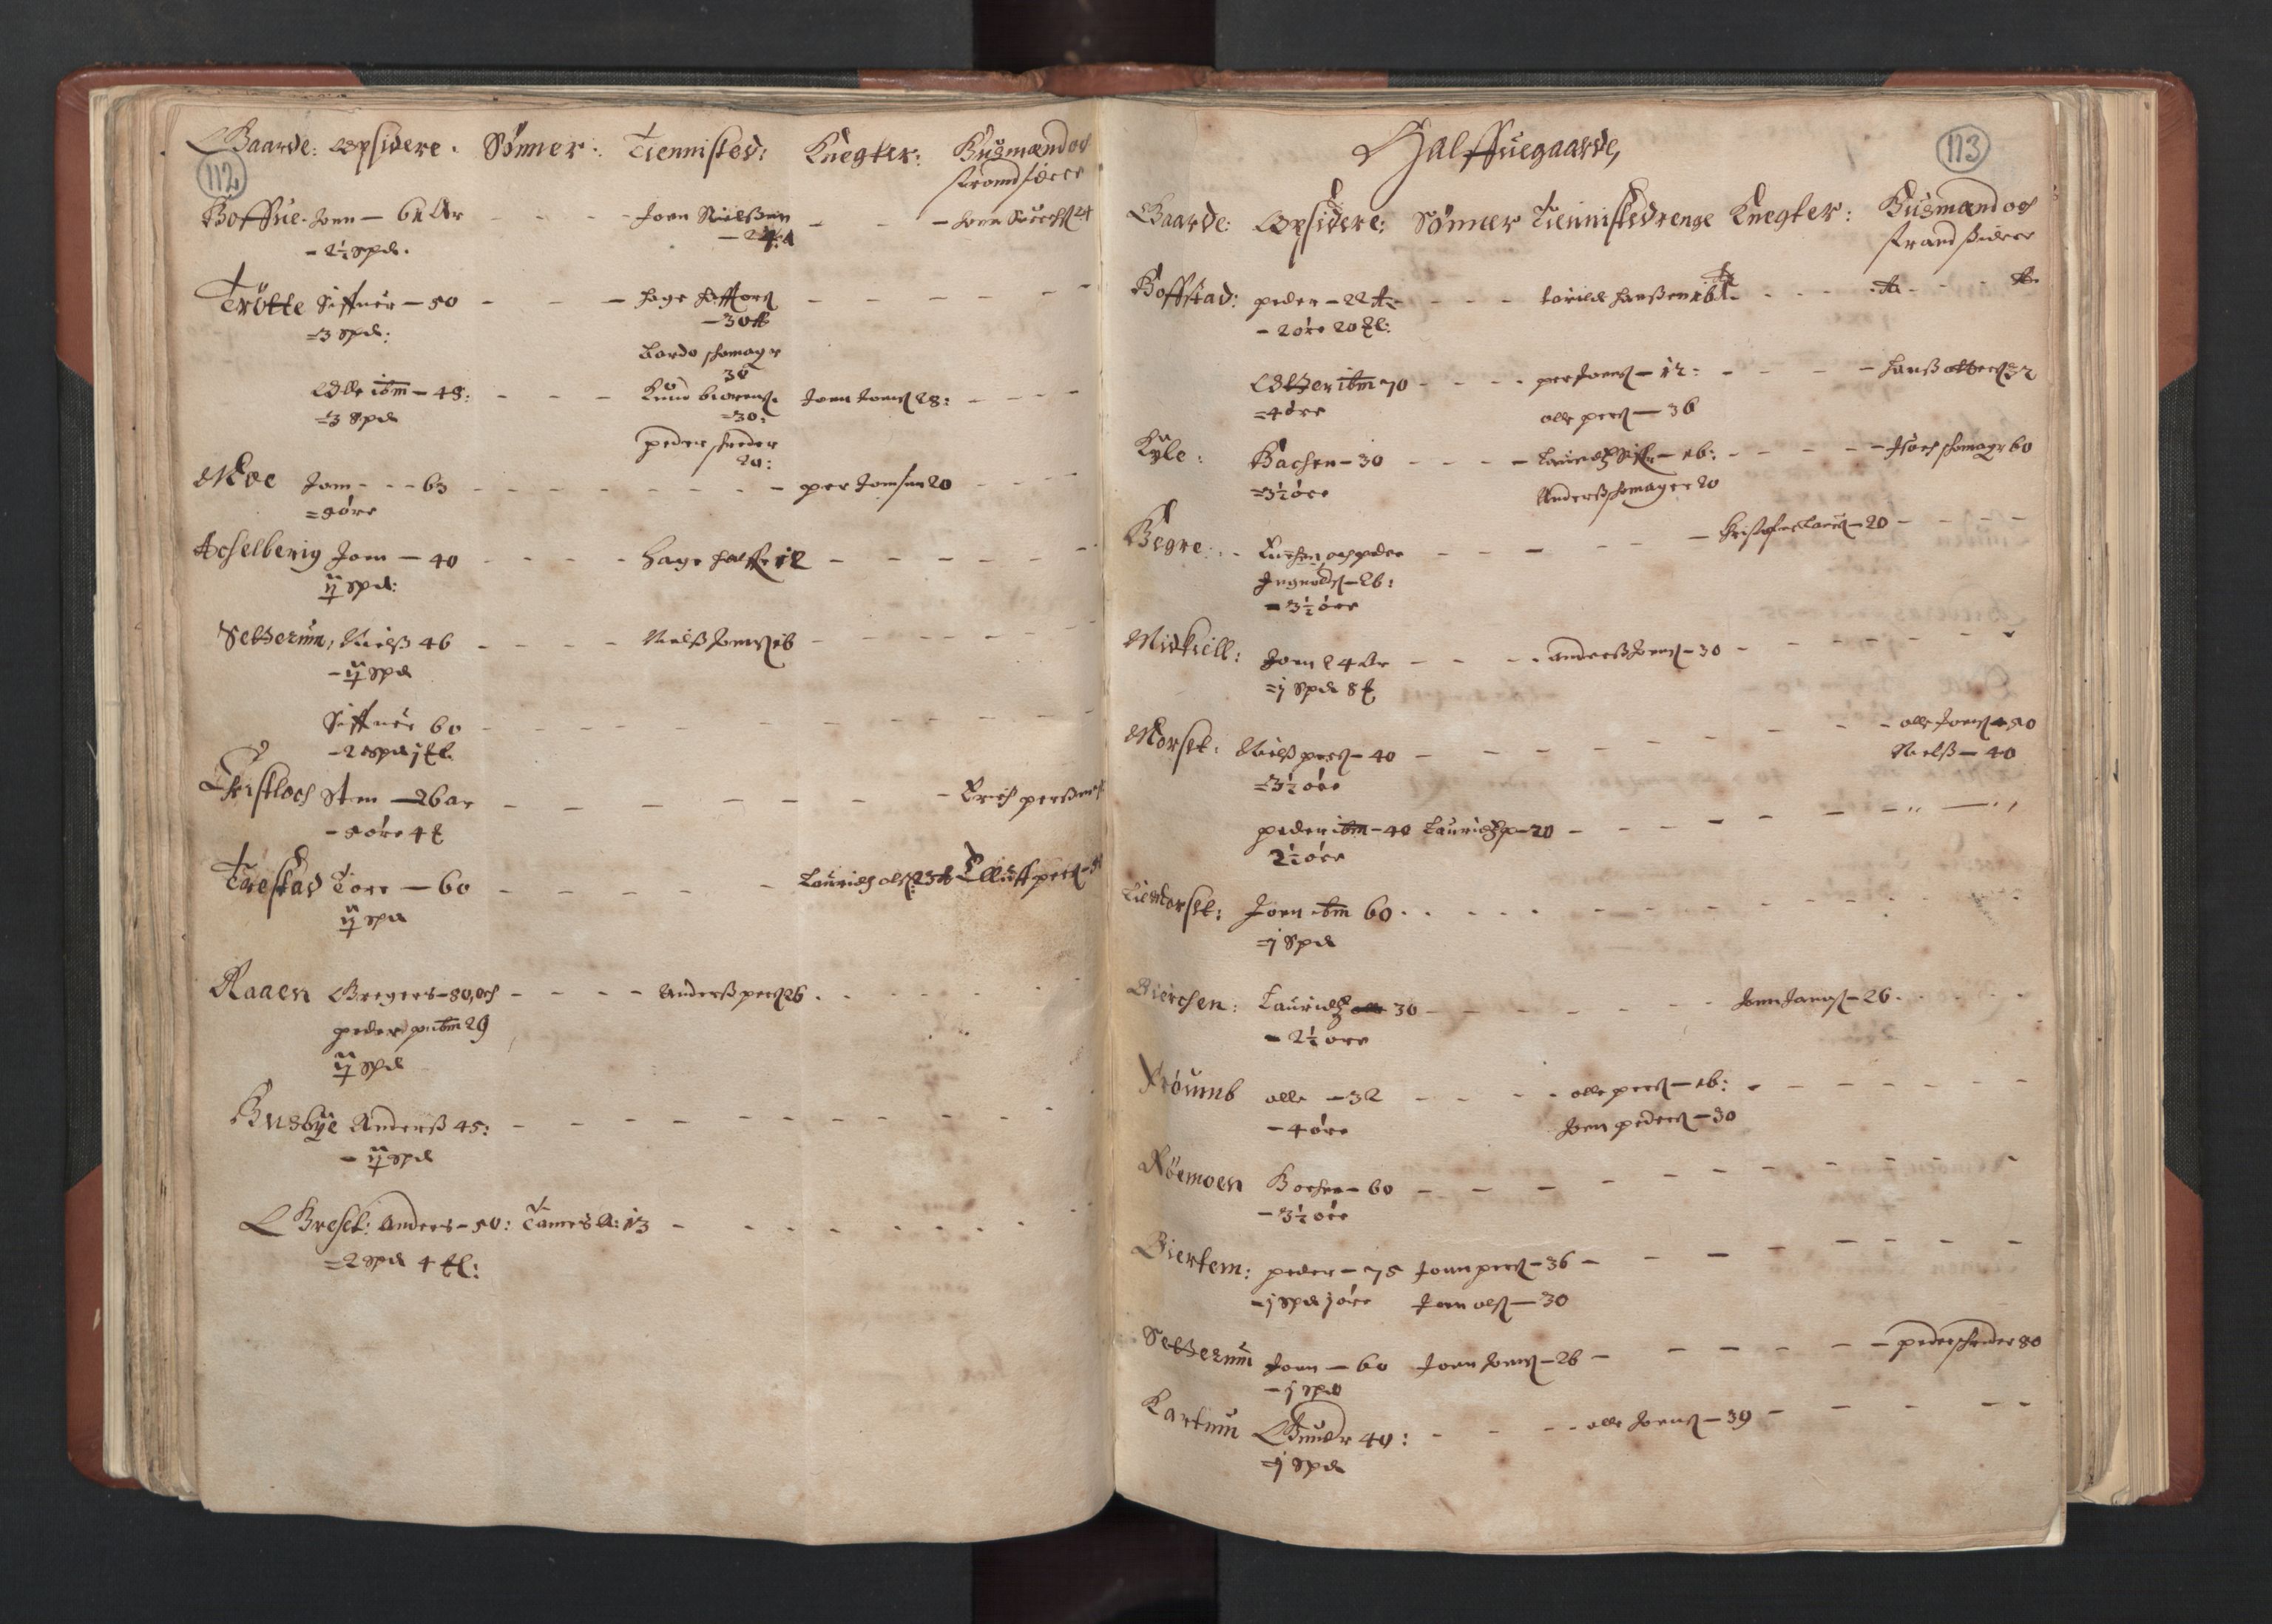 RA, Fogdenes og sorenskrivernes manntall 1664-1666, nr. 19: Fosen fogderi, Inderøy fogderi, Selbu fogderi, Namdal fogderi og Stjørdal fogderi, 1664-1665, s. 112-113